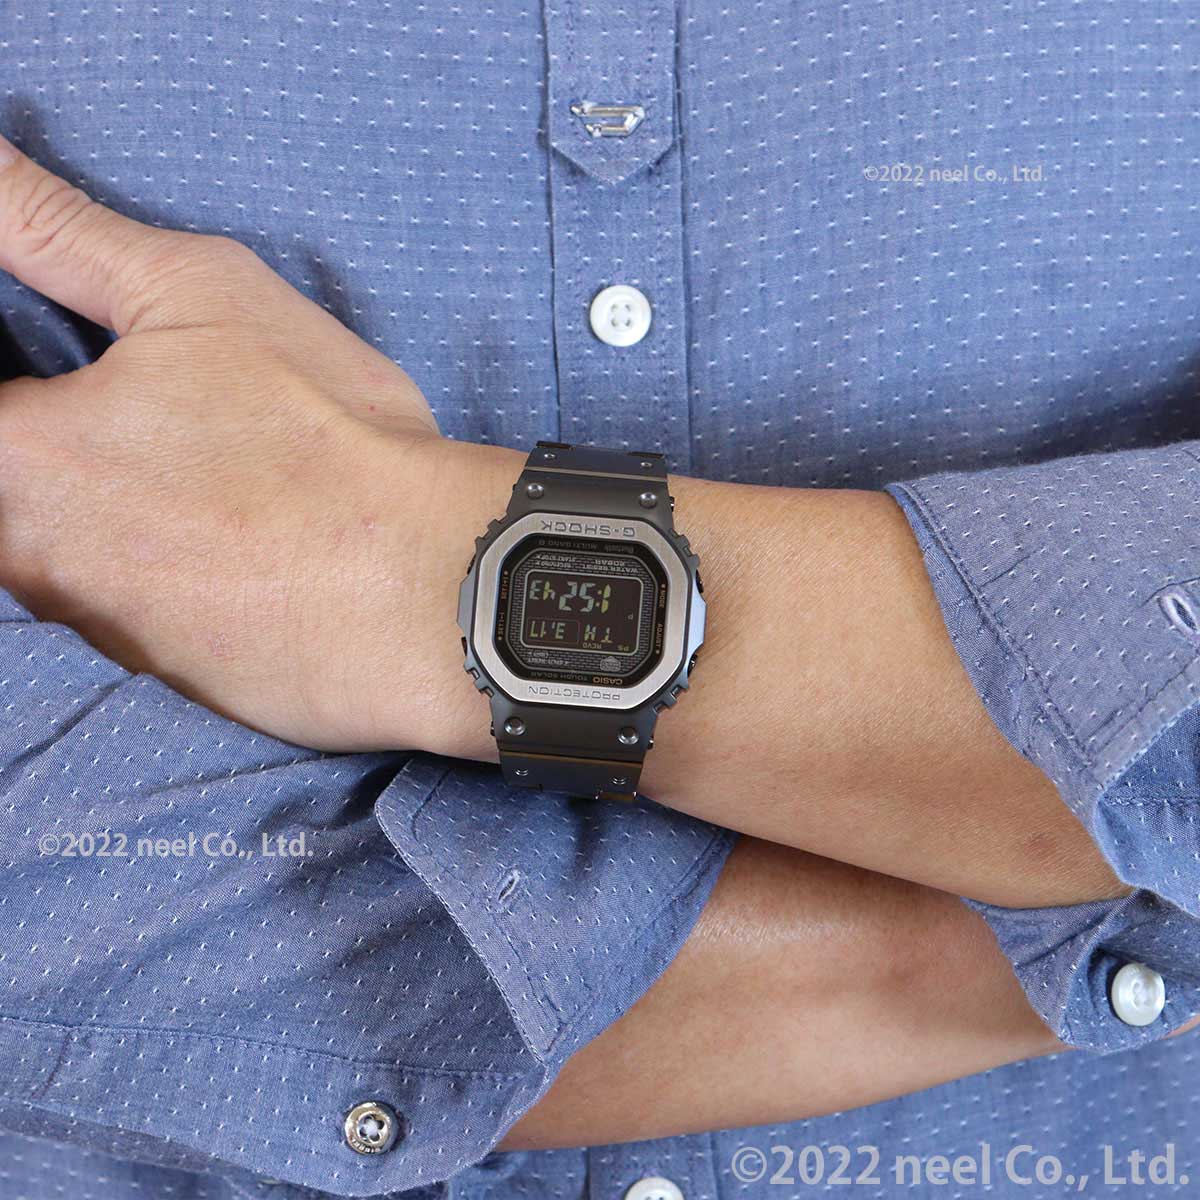 Gショック G-SHOCK 電波 ソーラー デジタル 腕時計 メンズ GMW-B5000MB 